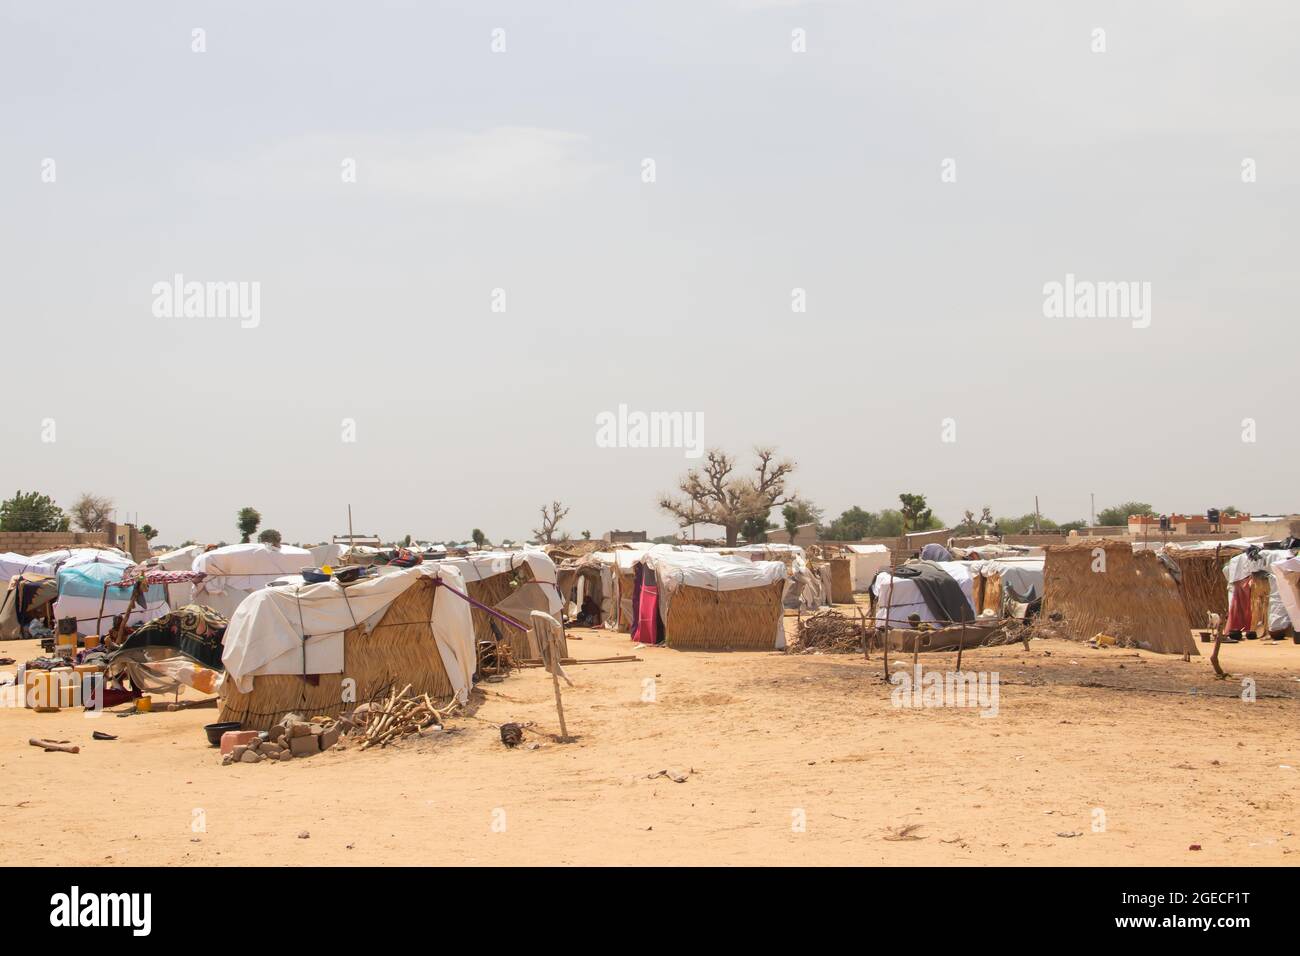 Camp de réfugiés fait de matériaux locaux et de feuilles de plastique, personnes vivant dans des conditions très mauvaises, manque d'eau propre, accès à la santé Banque D'Images